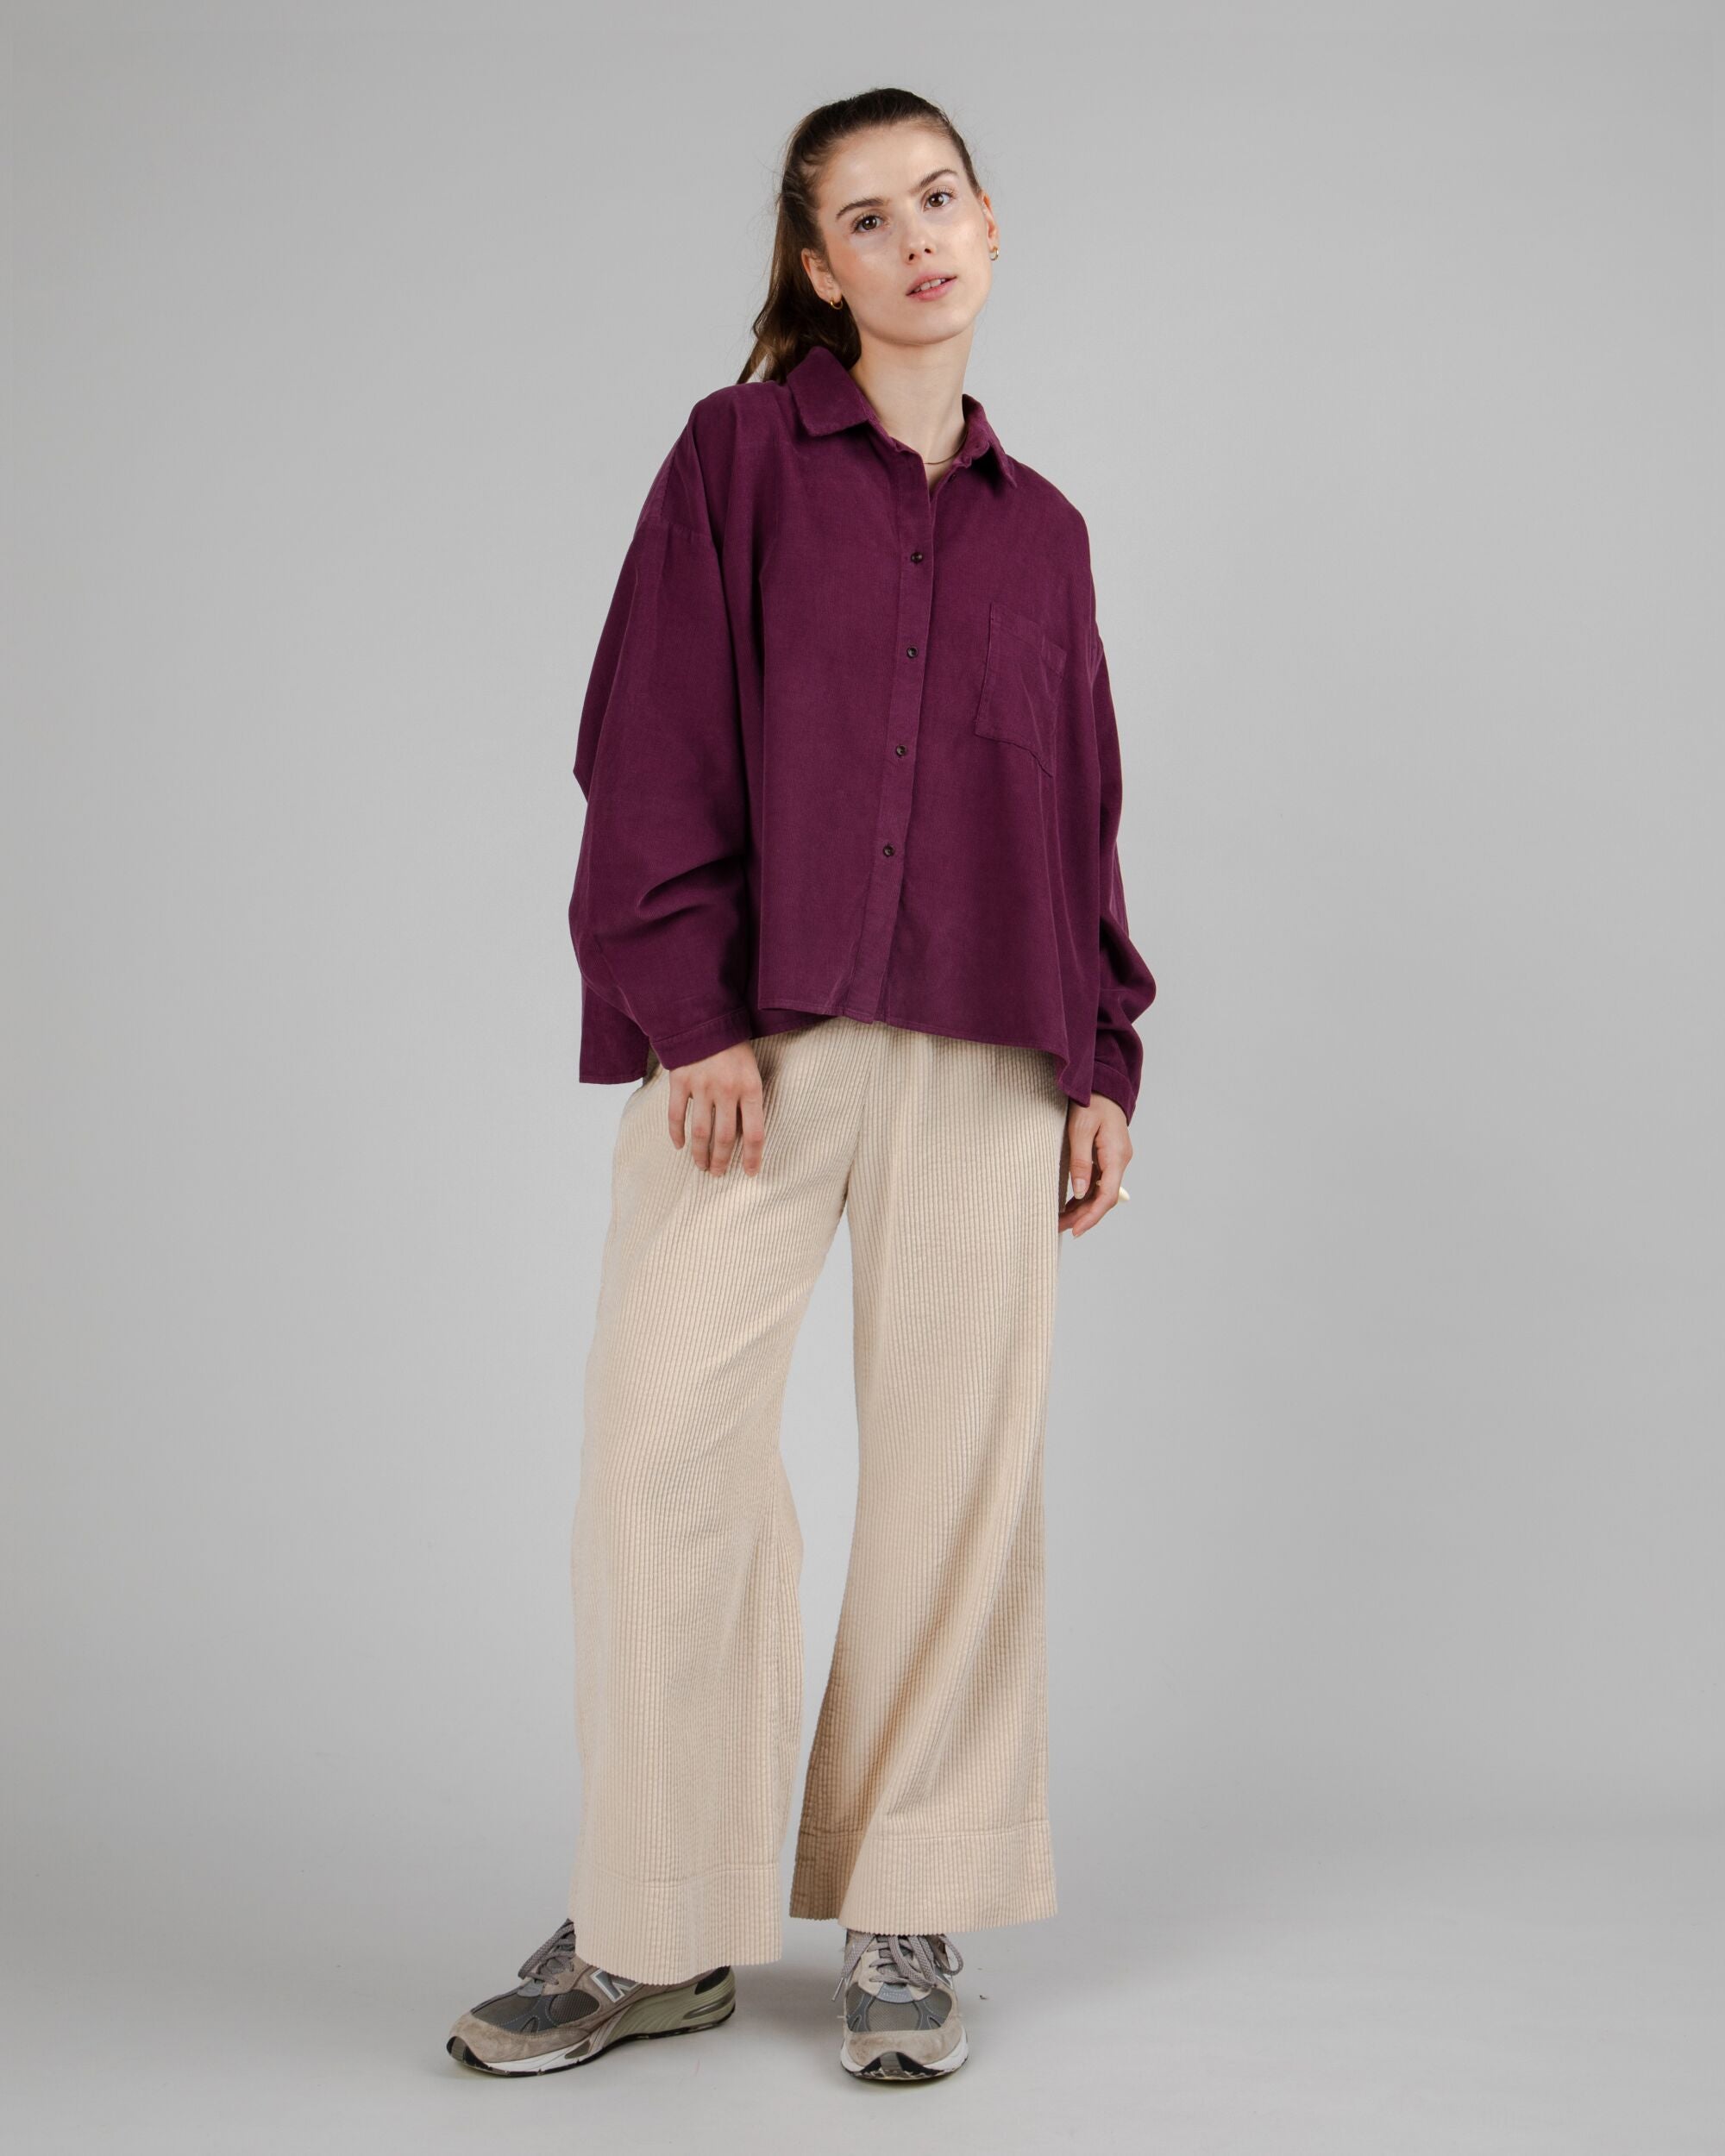 Purple Babycord Boxy blouse made of organic cotton by Brava Fabrics